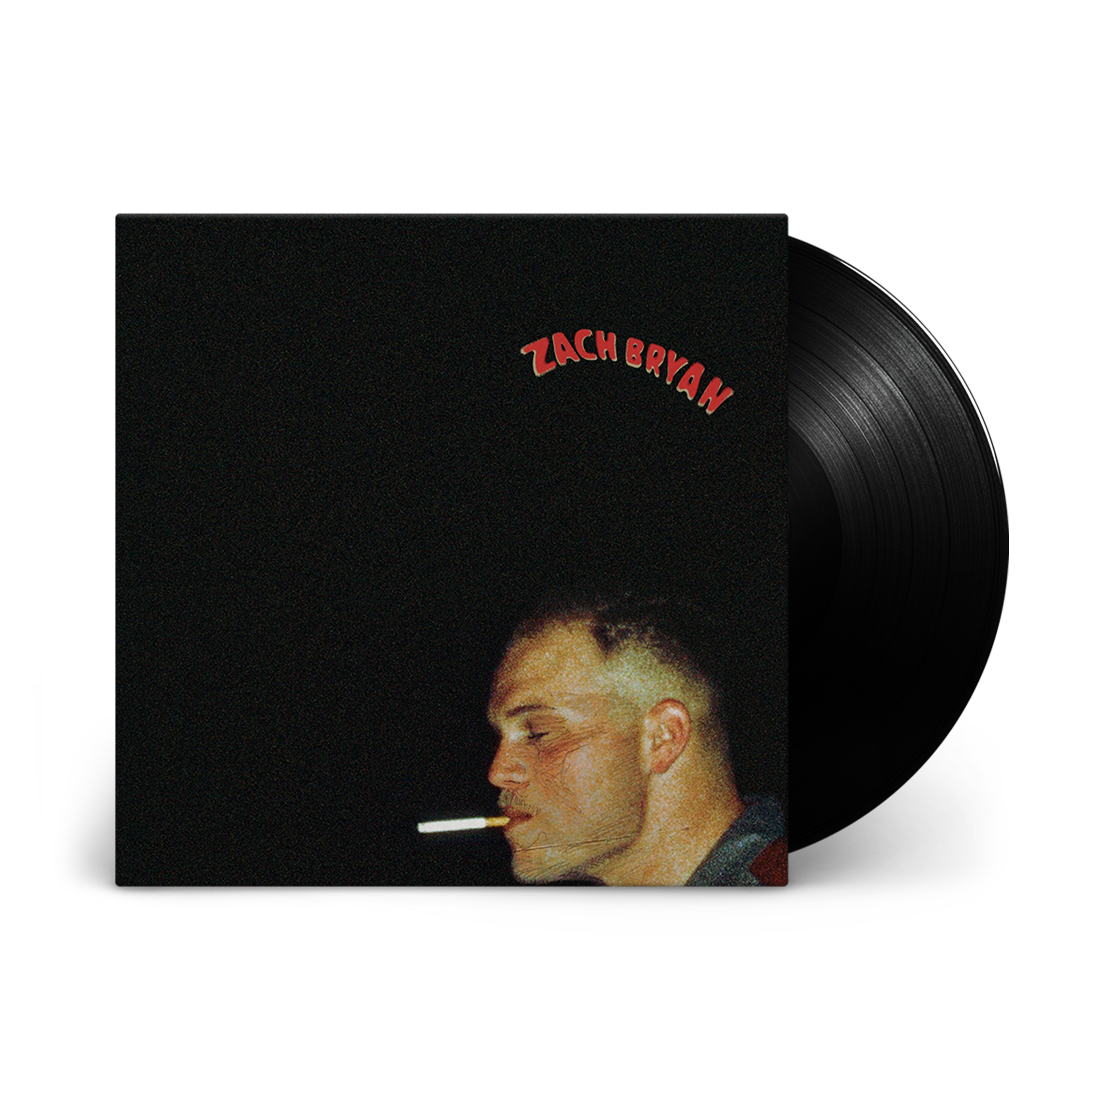 Zach Bryan - Zach Bryan: Vinyl LP